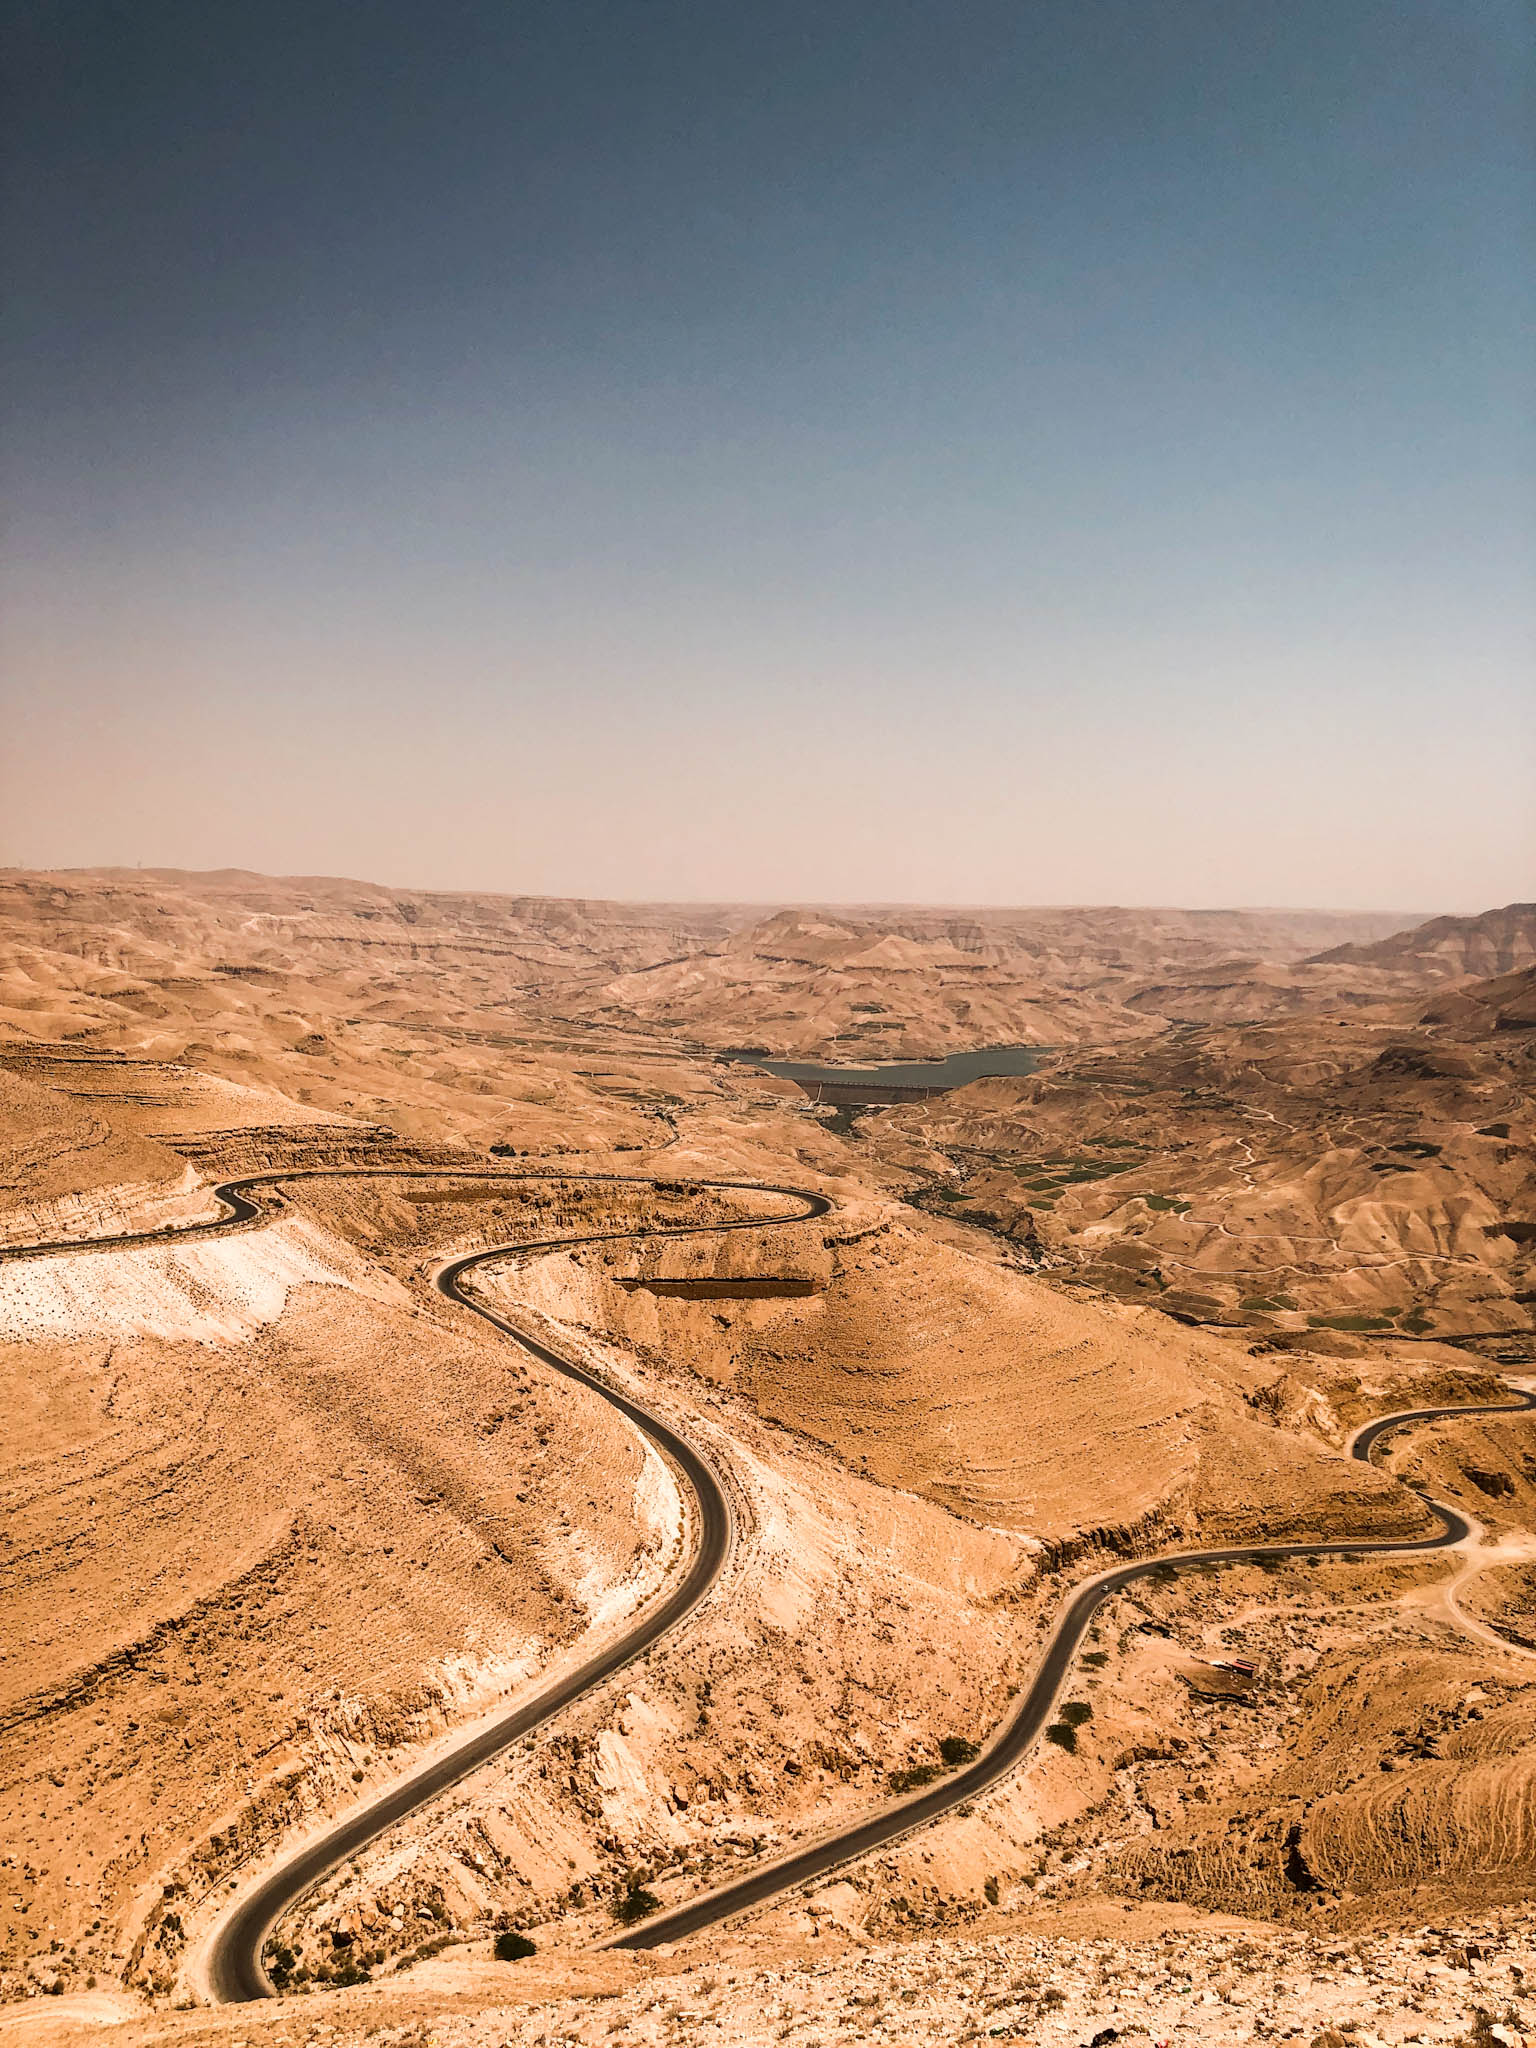 Jordania samochodem - trasa poza głównym szlakiem